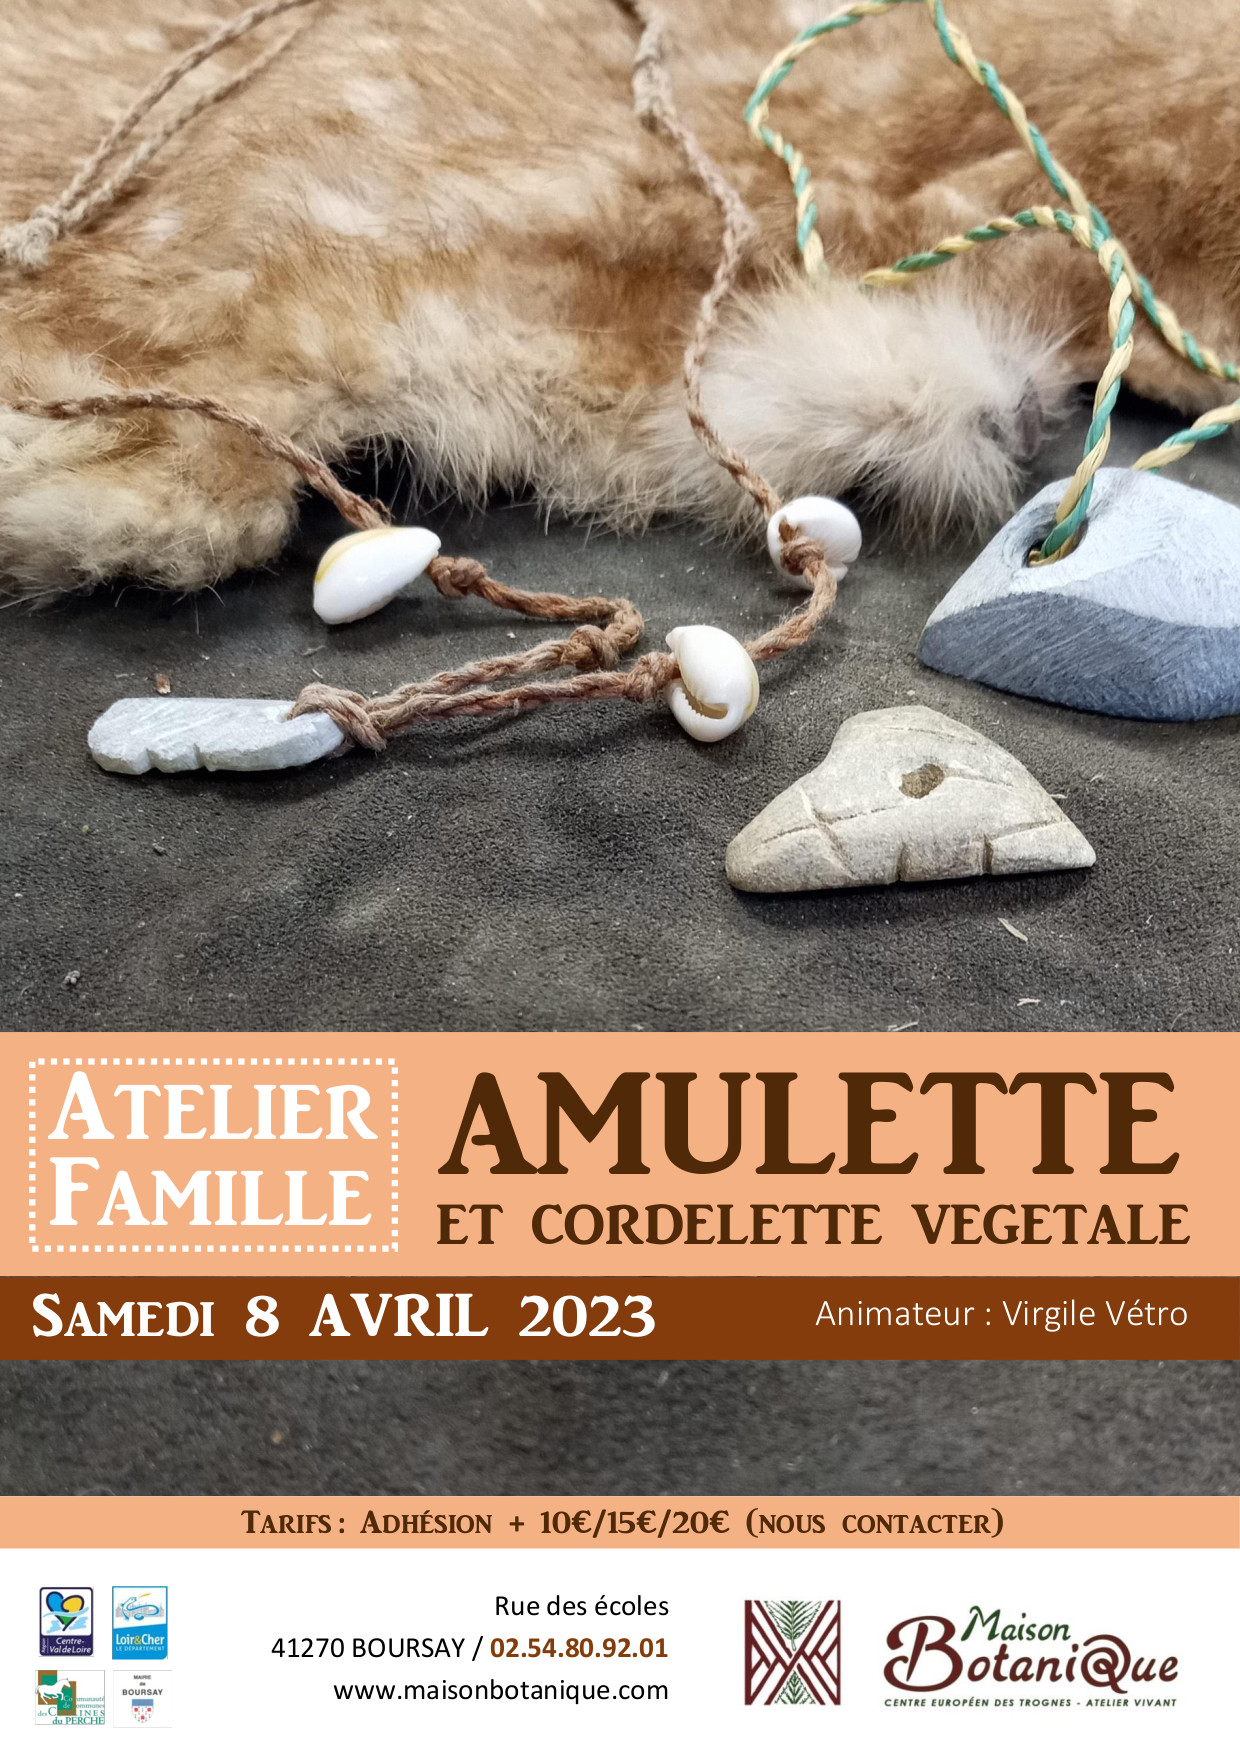 Atelier Famille : Amulette et cordelette végétale